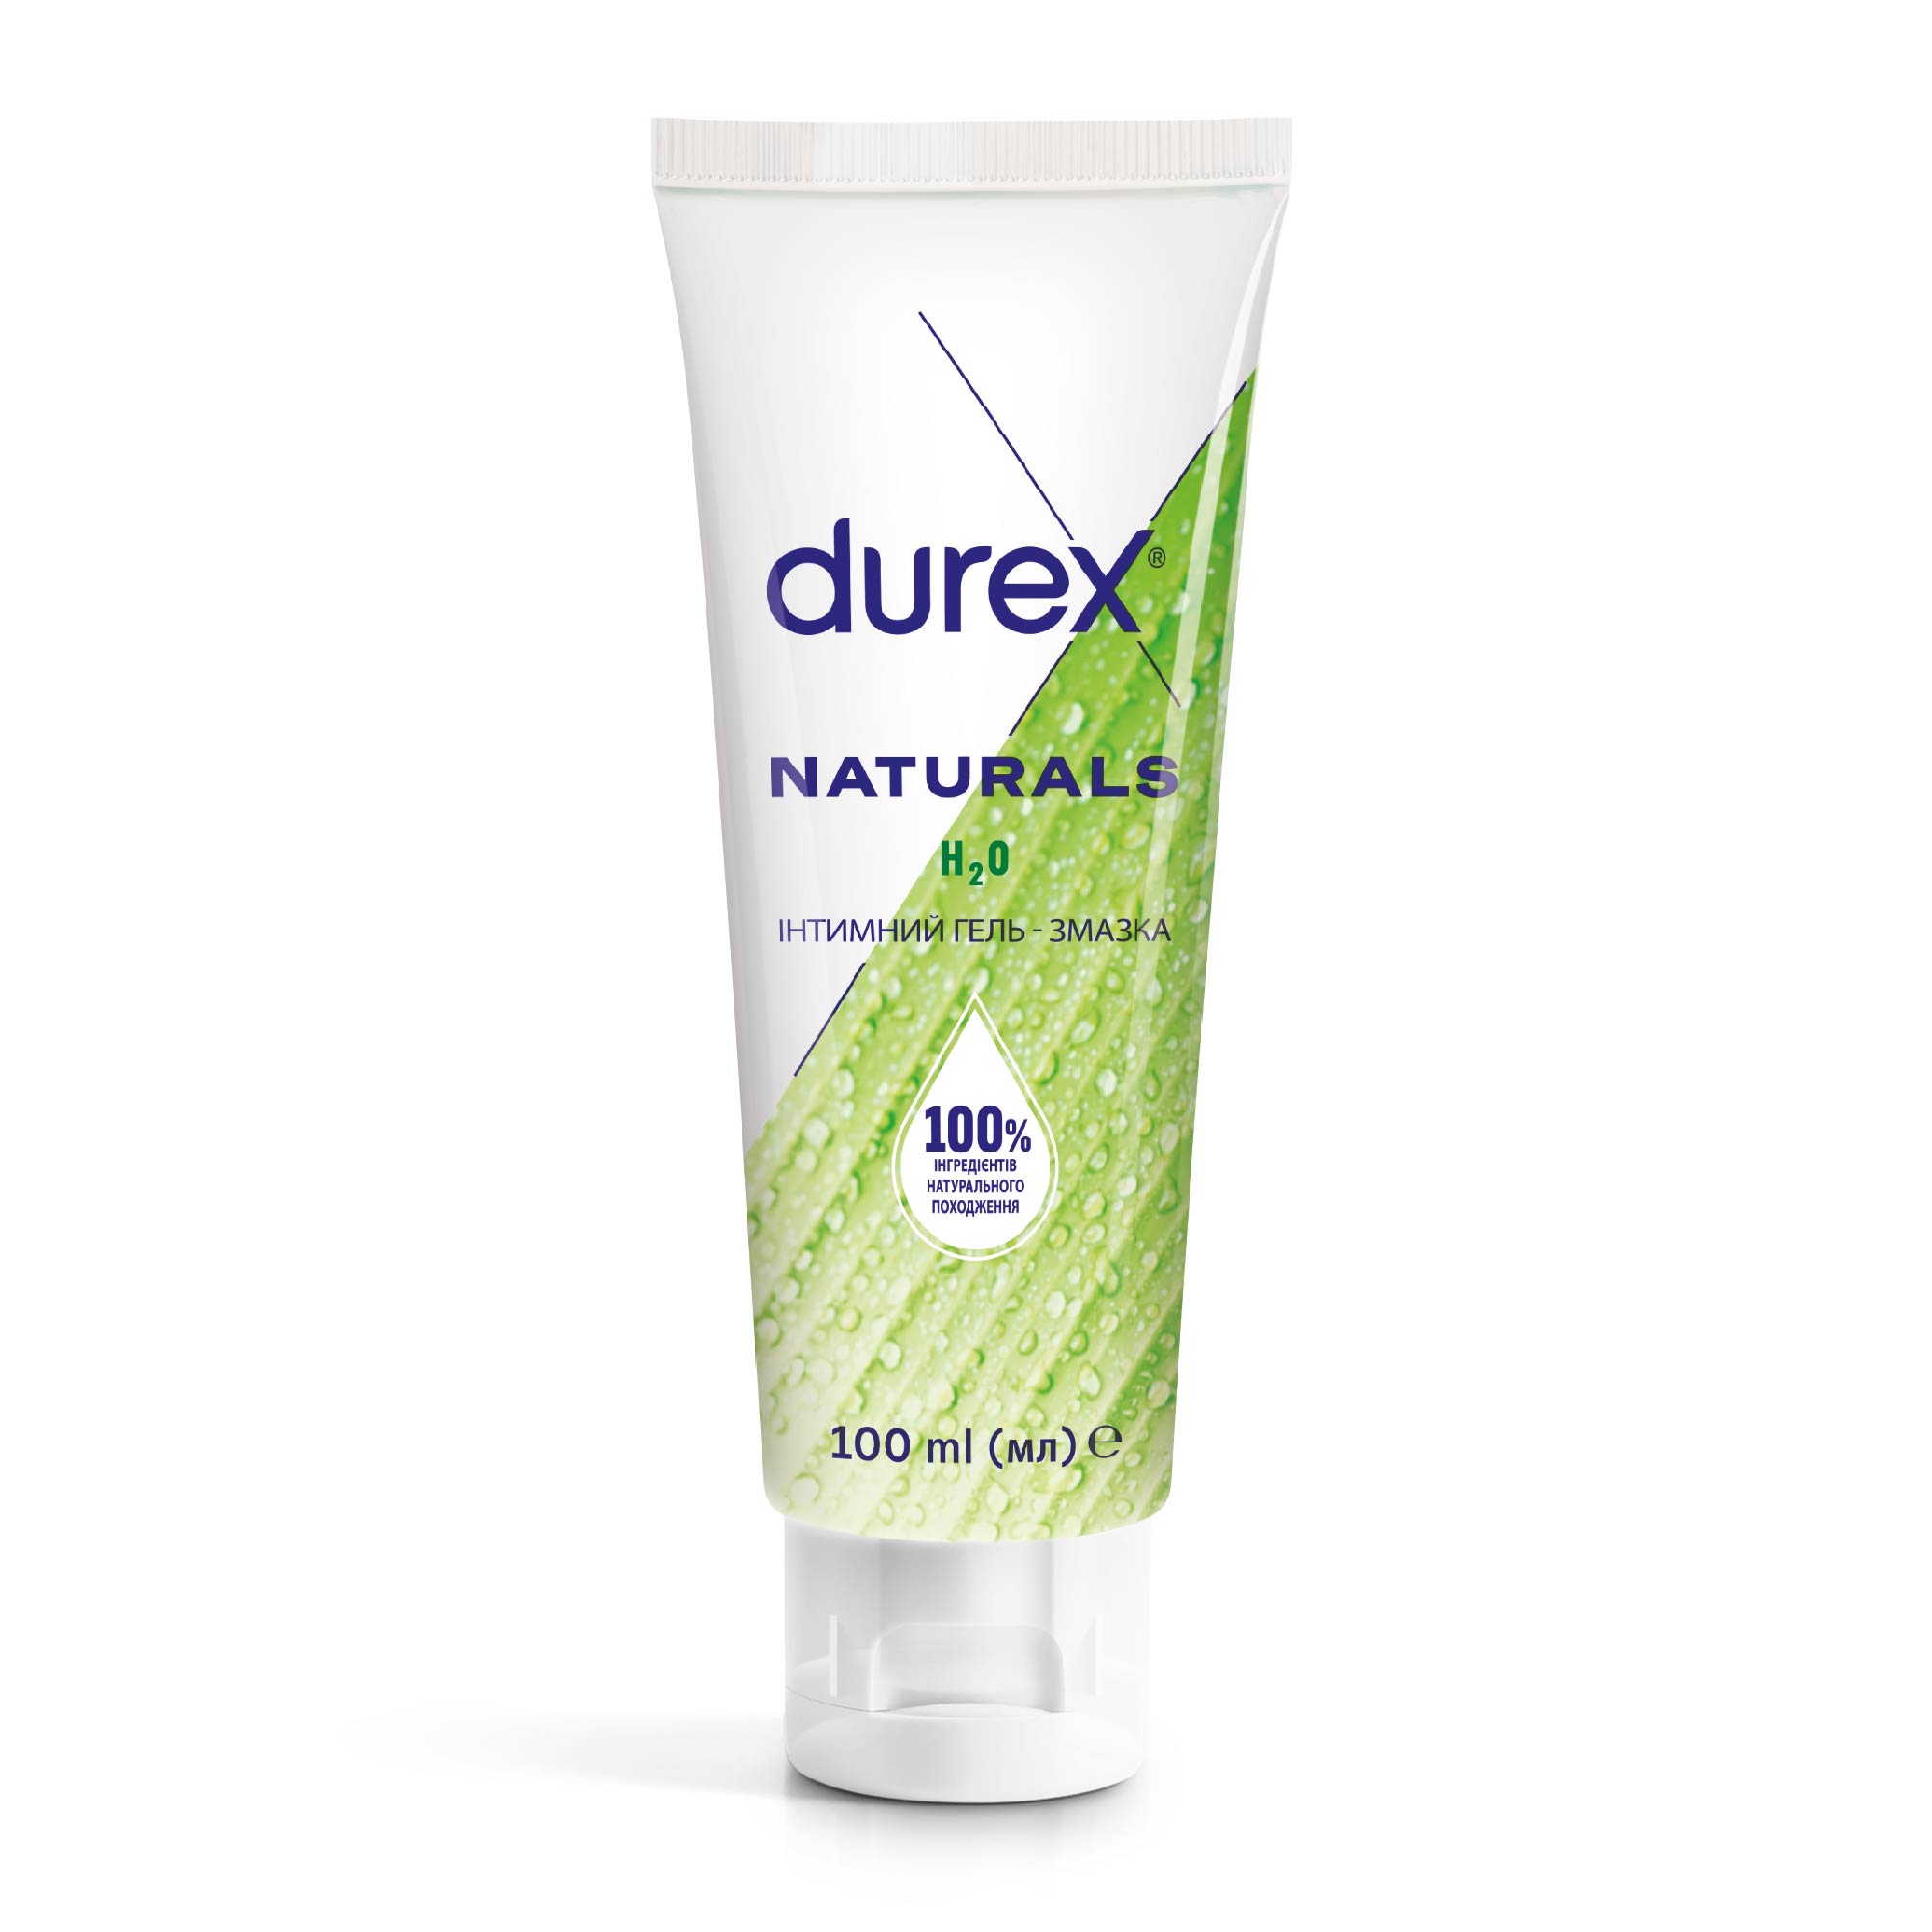 Интимный гель-смазка Durex (Дюрекс) Naturals из натуральных ингредиентов, 100 мл